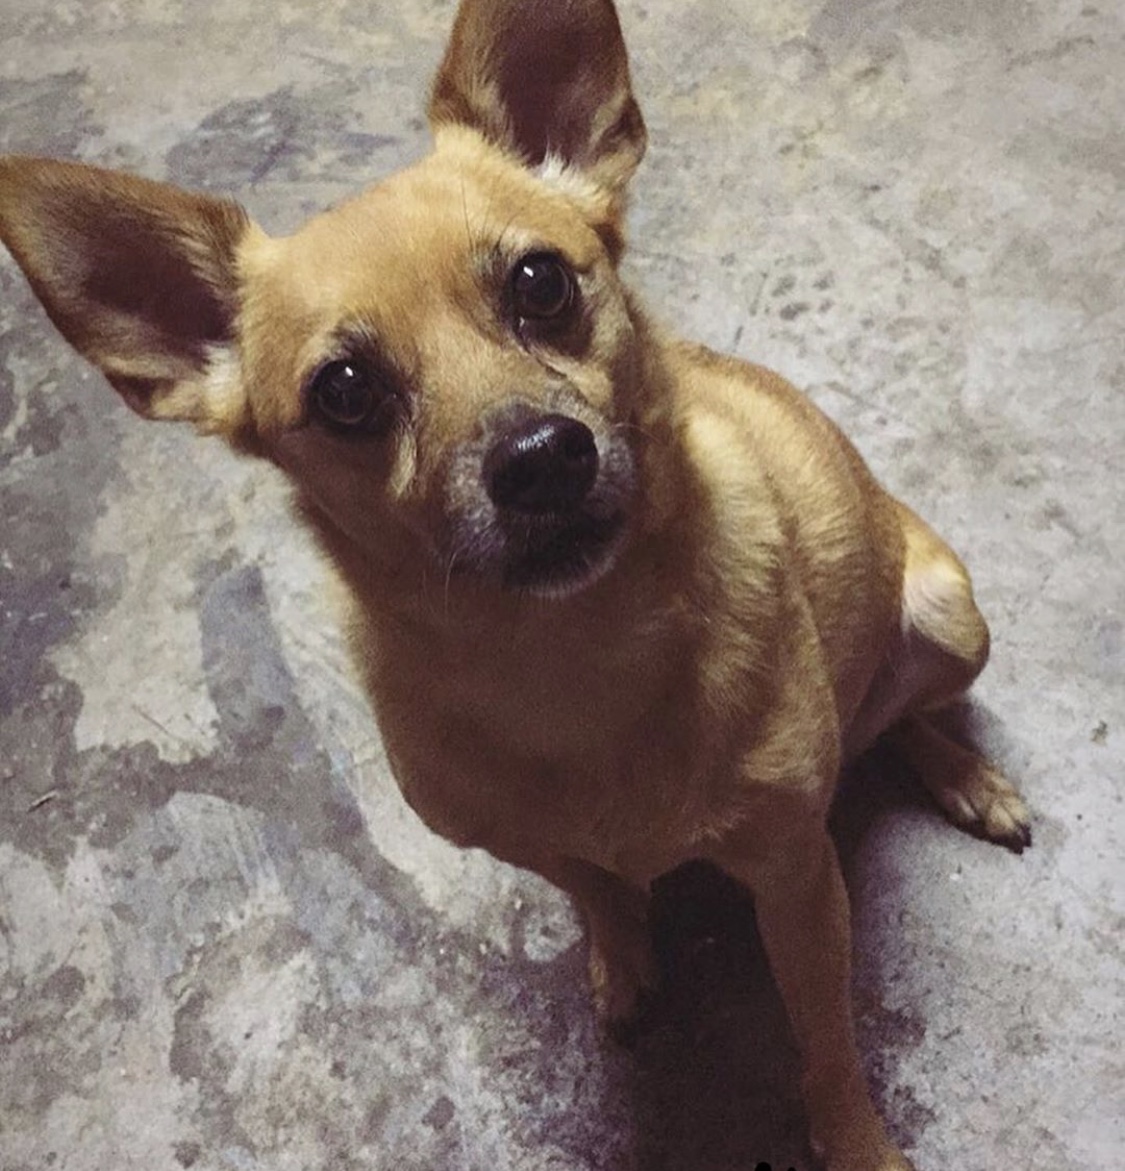 Image of Luna, Lost Dog